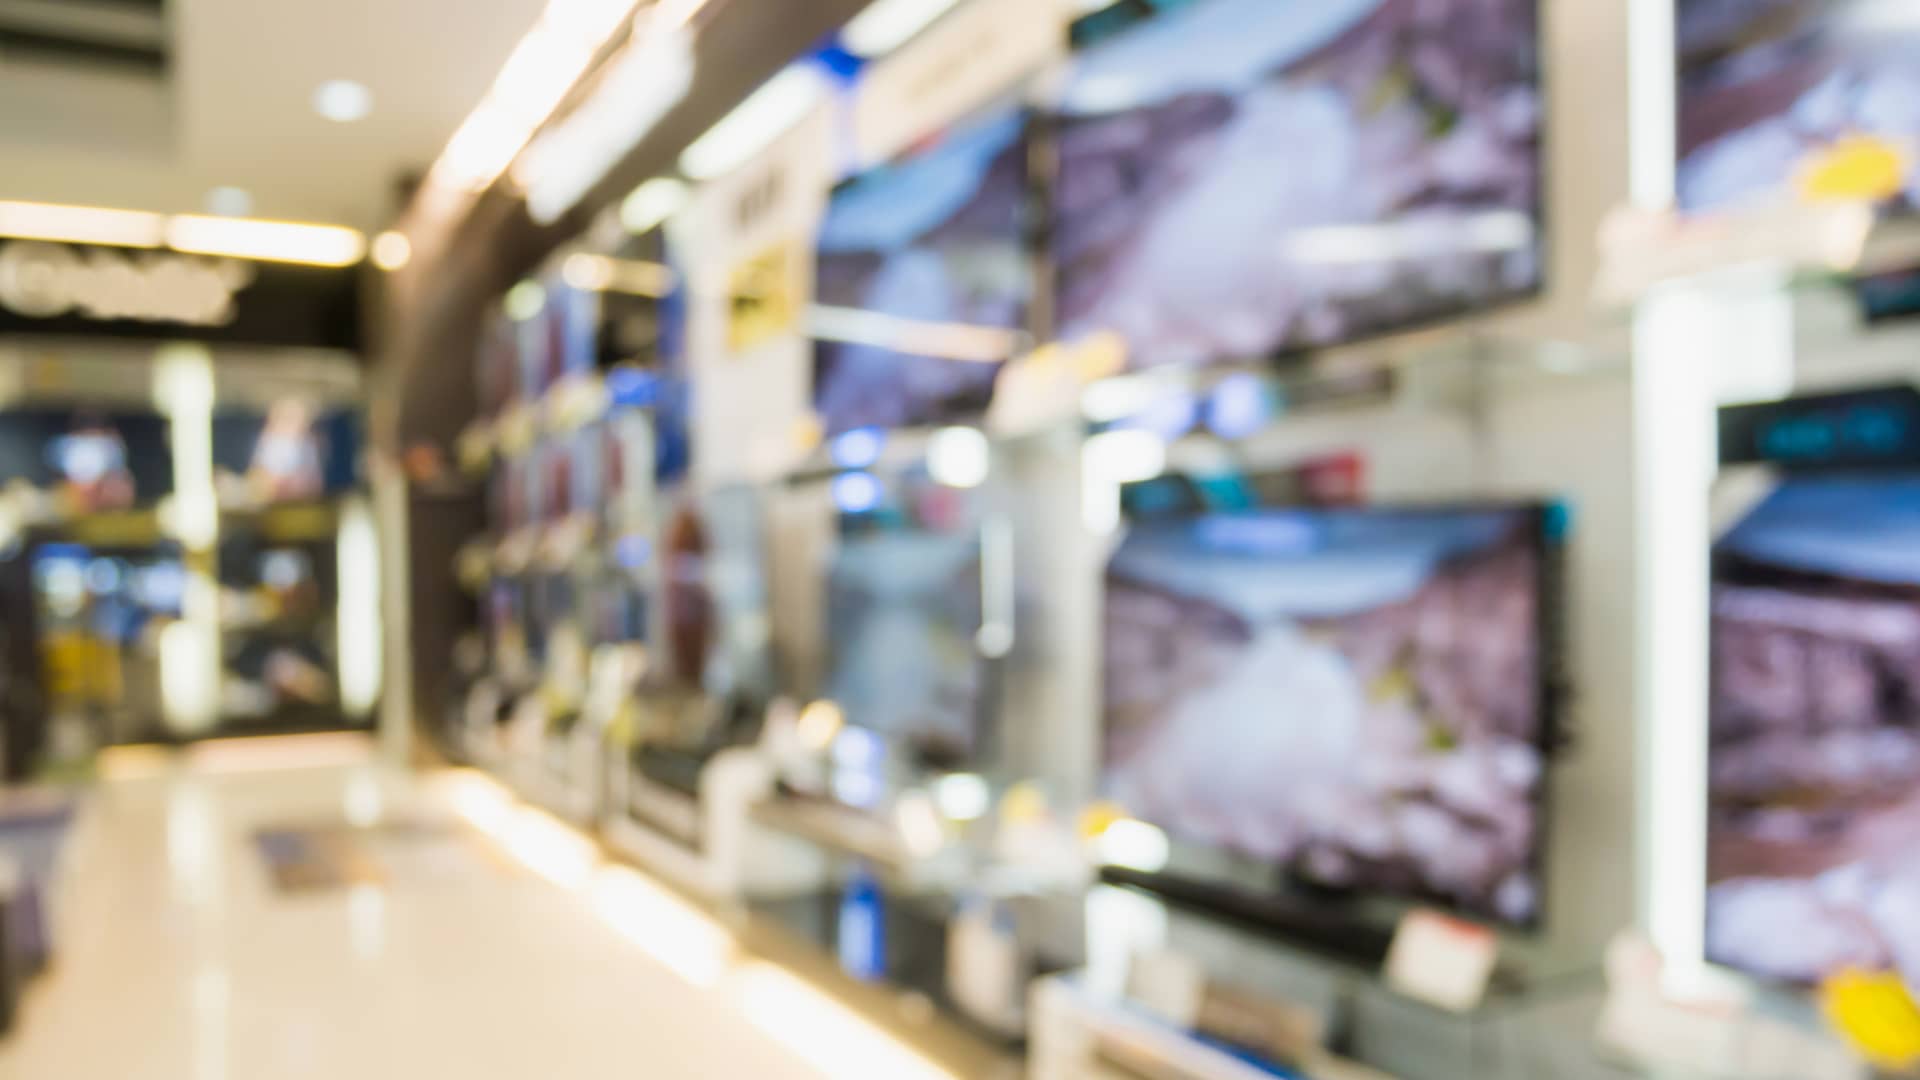 Televisores tipo smart tv a la venta como los que se pueden conseguir gracias a yoigo